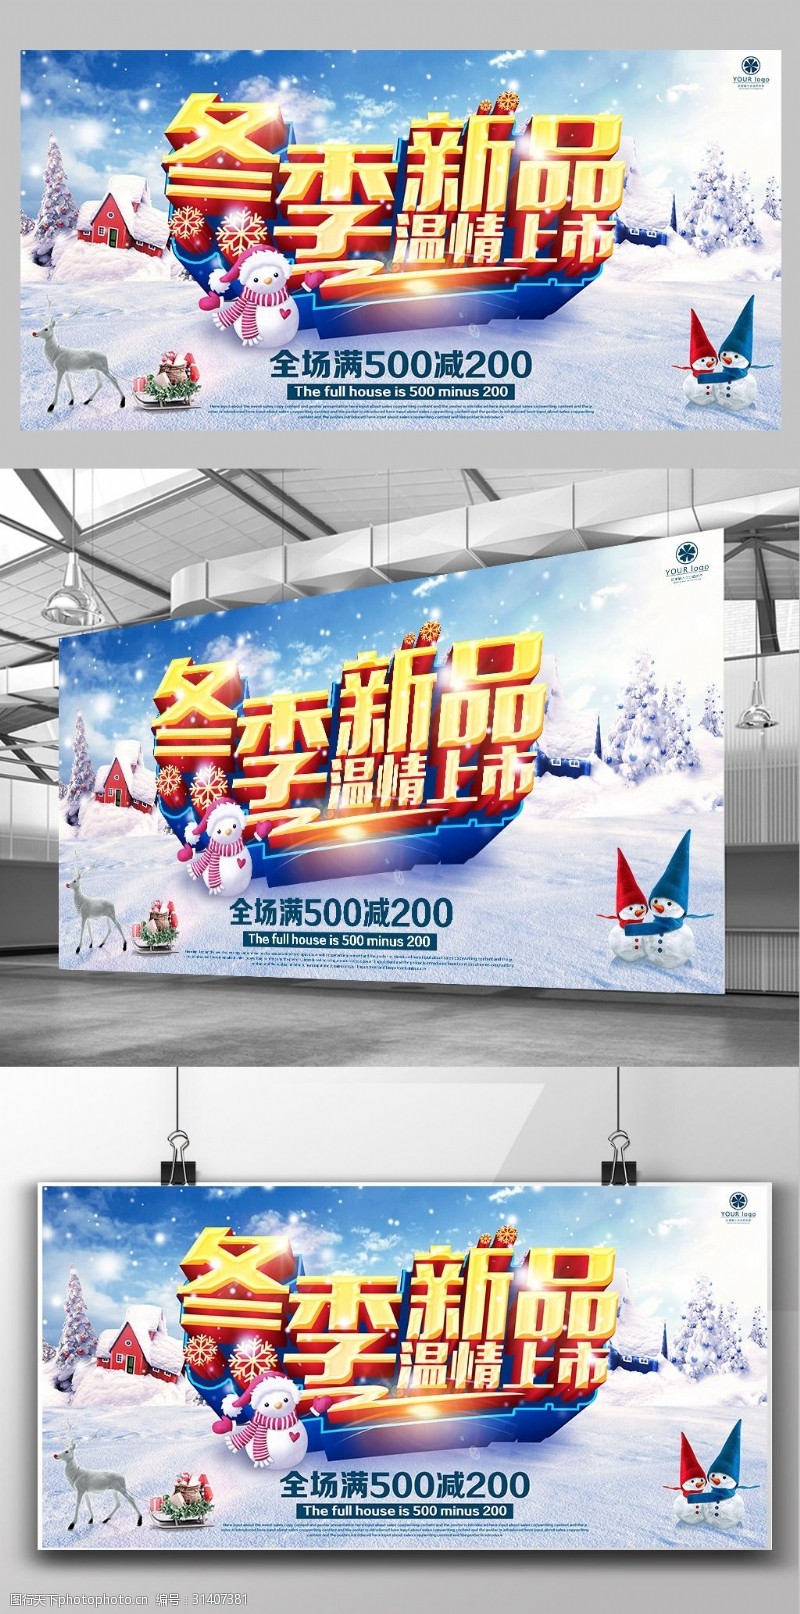 新品上市宣传冬季新品上市促销活动宣传海报模板